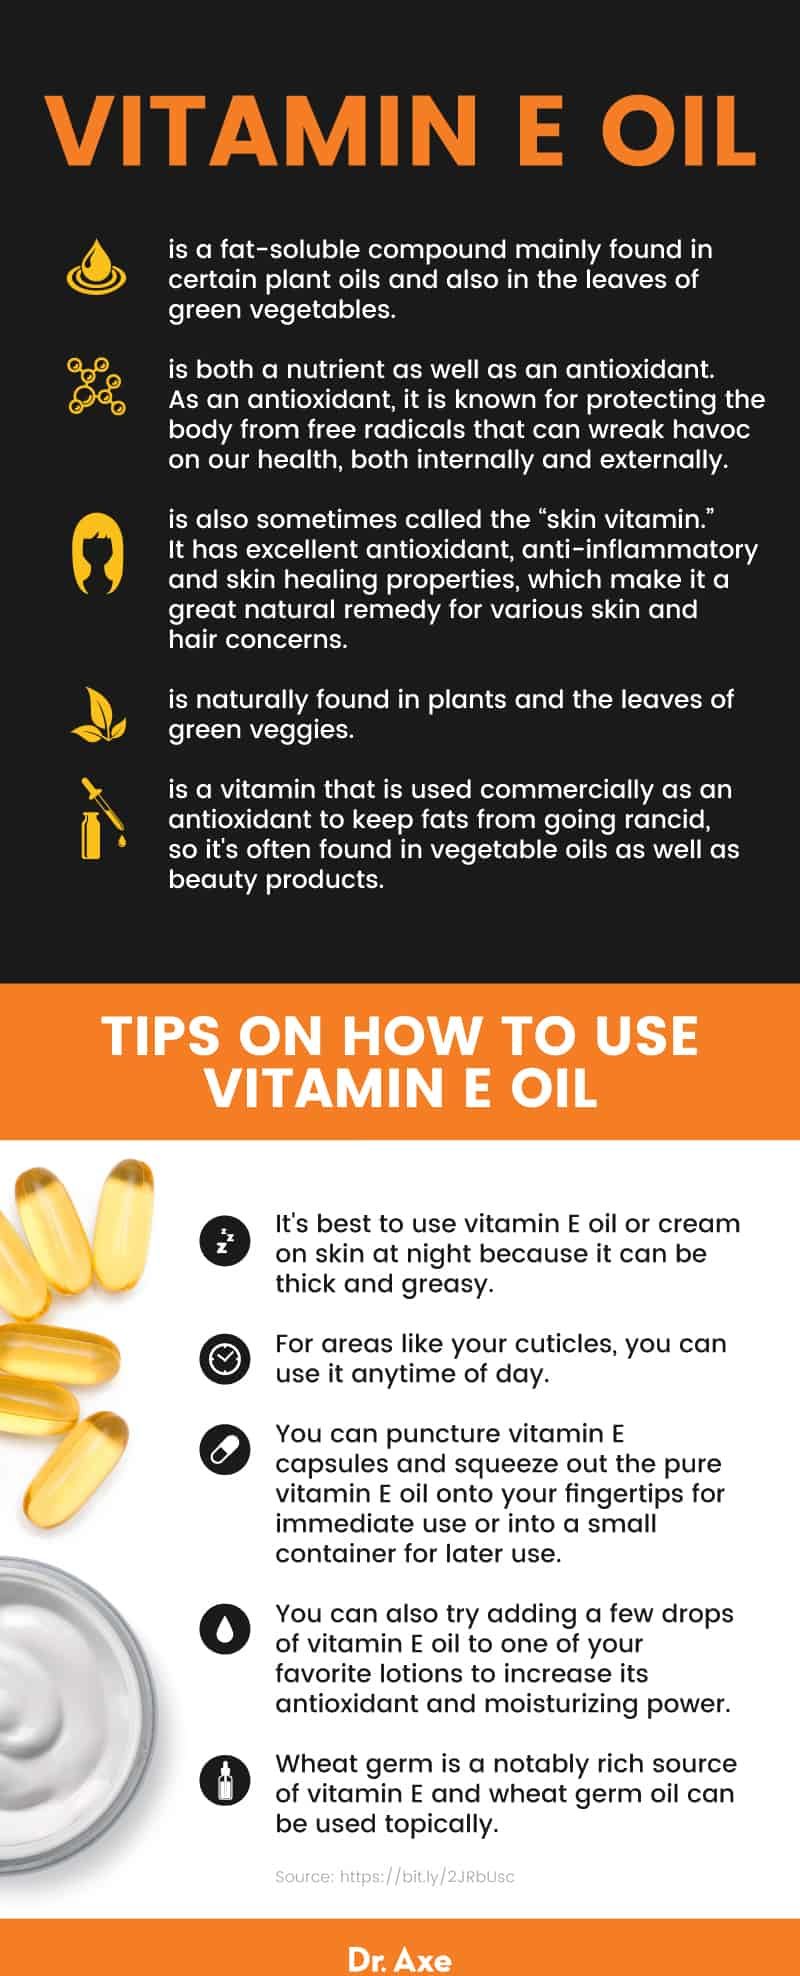 About vitamin E oil - Dr. Axe